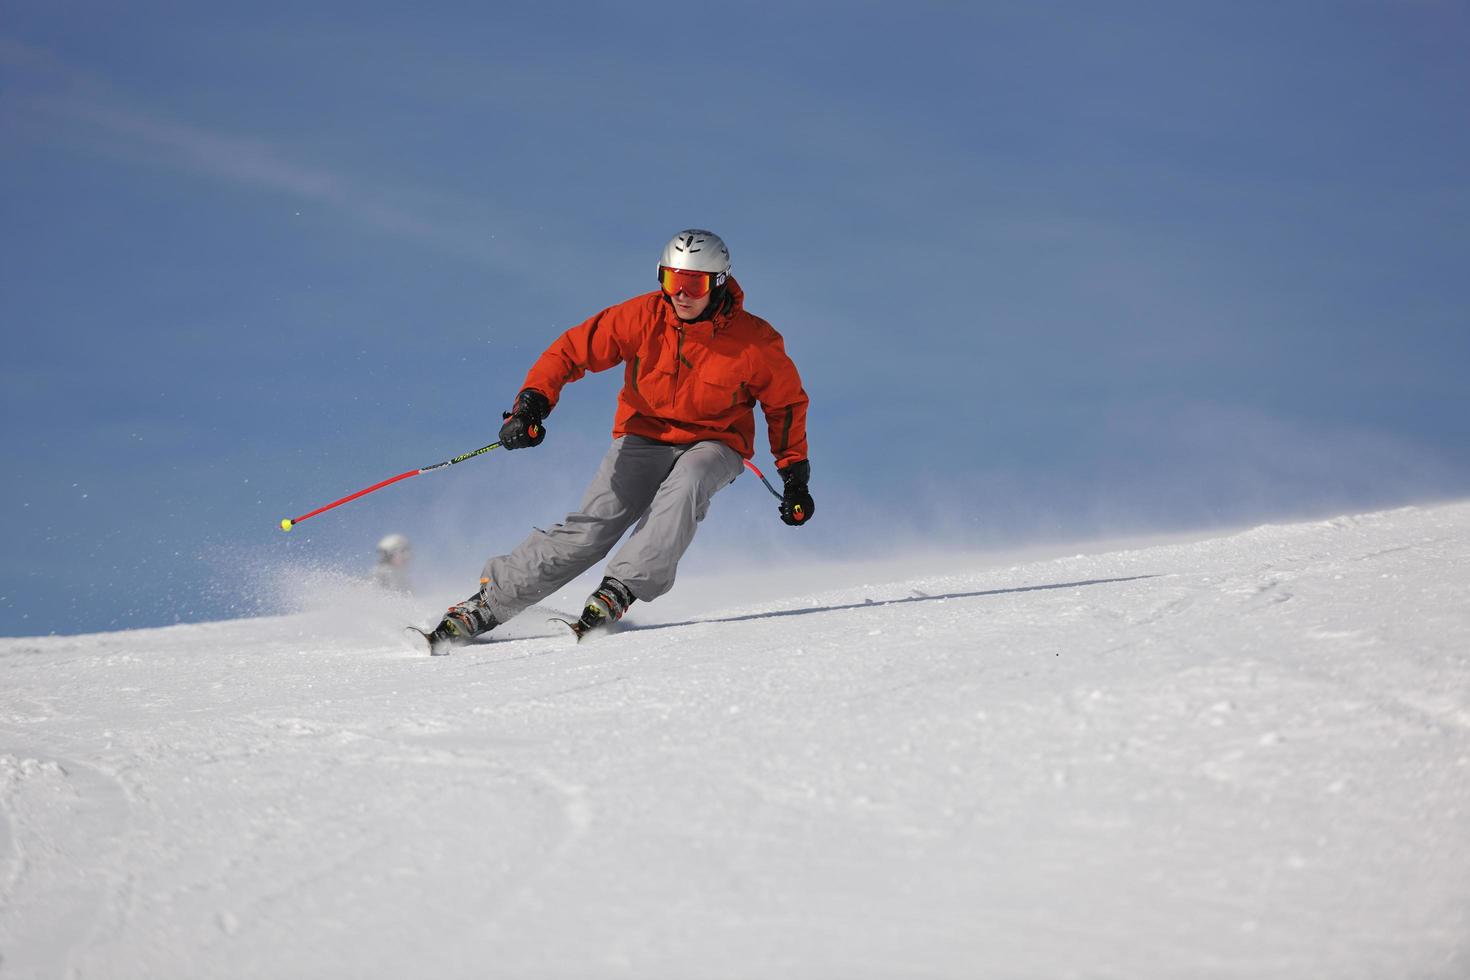 skiën op nu in het winterseizoen foto